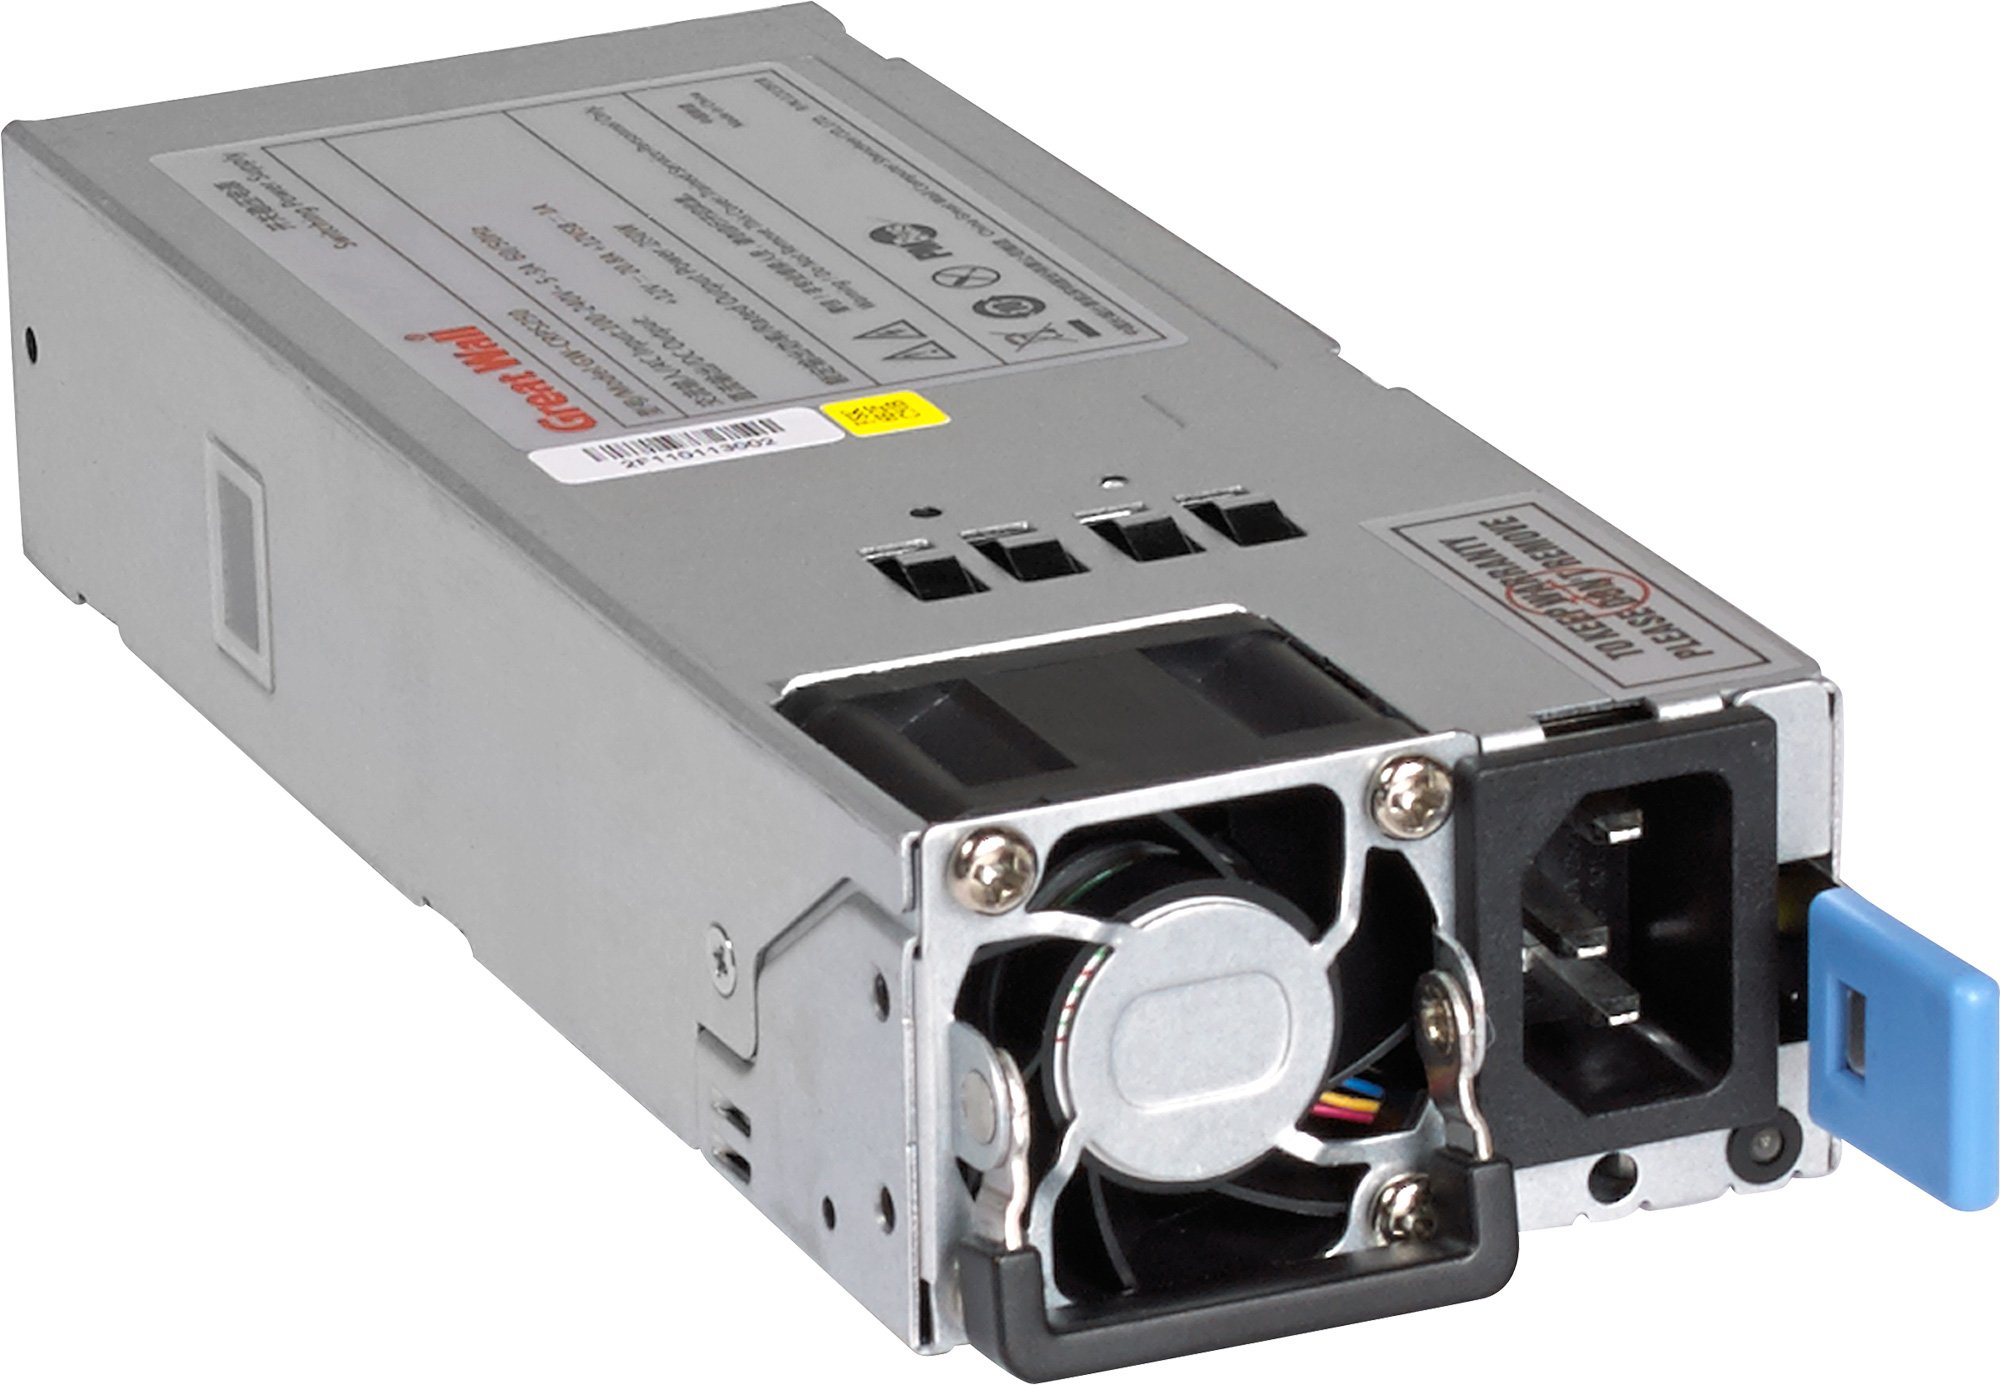 APS250W – Power Supply Unit 250W AC